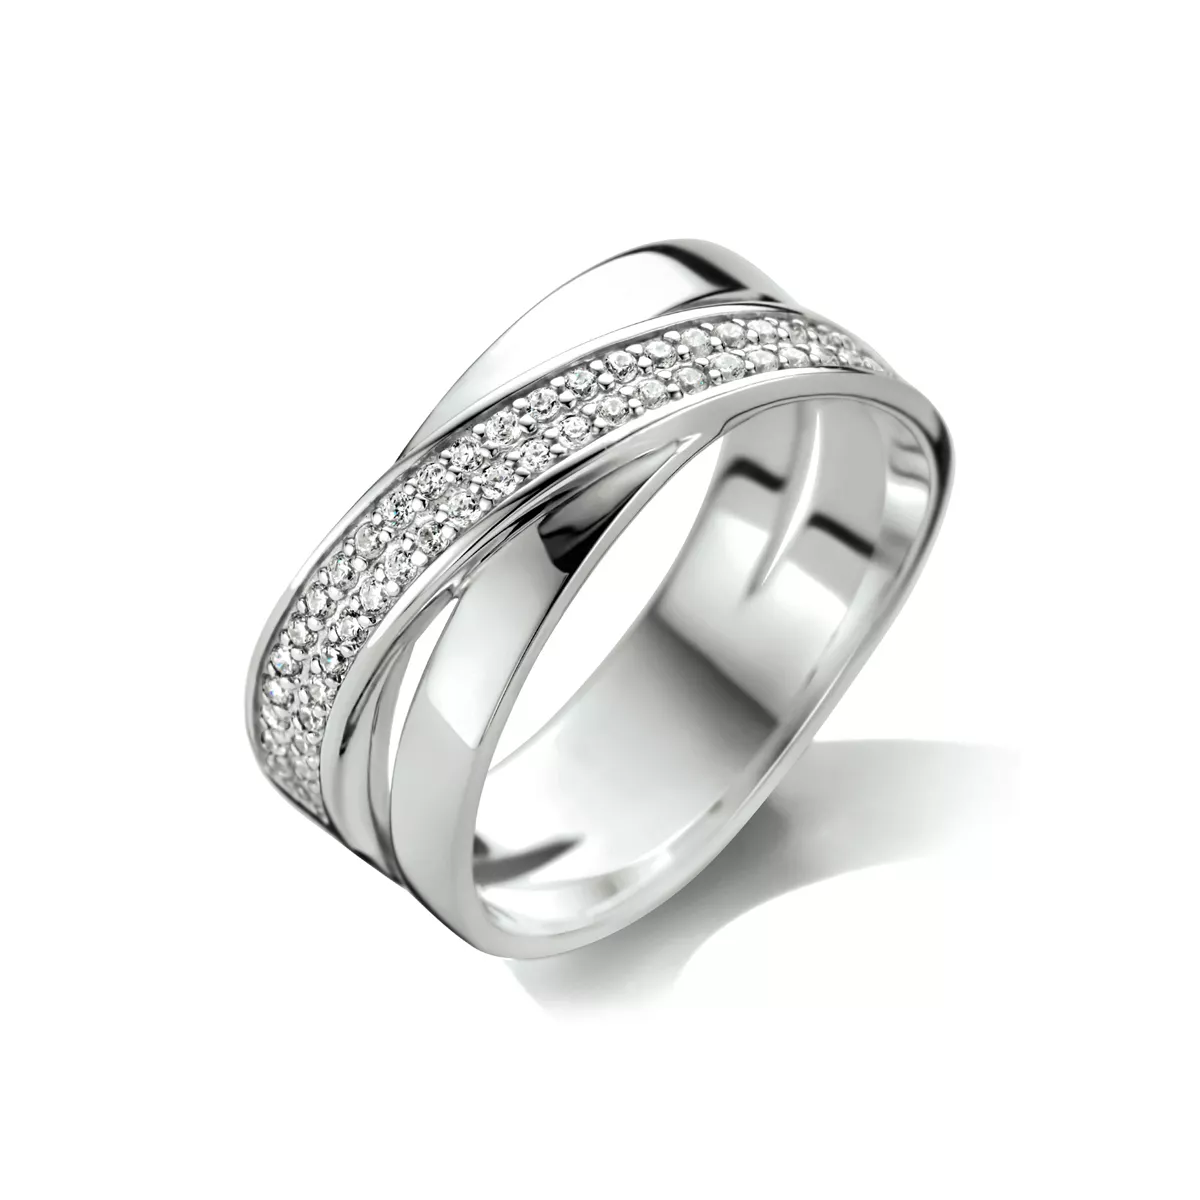 Ring Fantasie zilver met zirconia en 8,5 mm breed